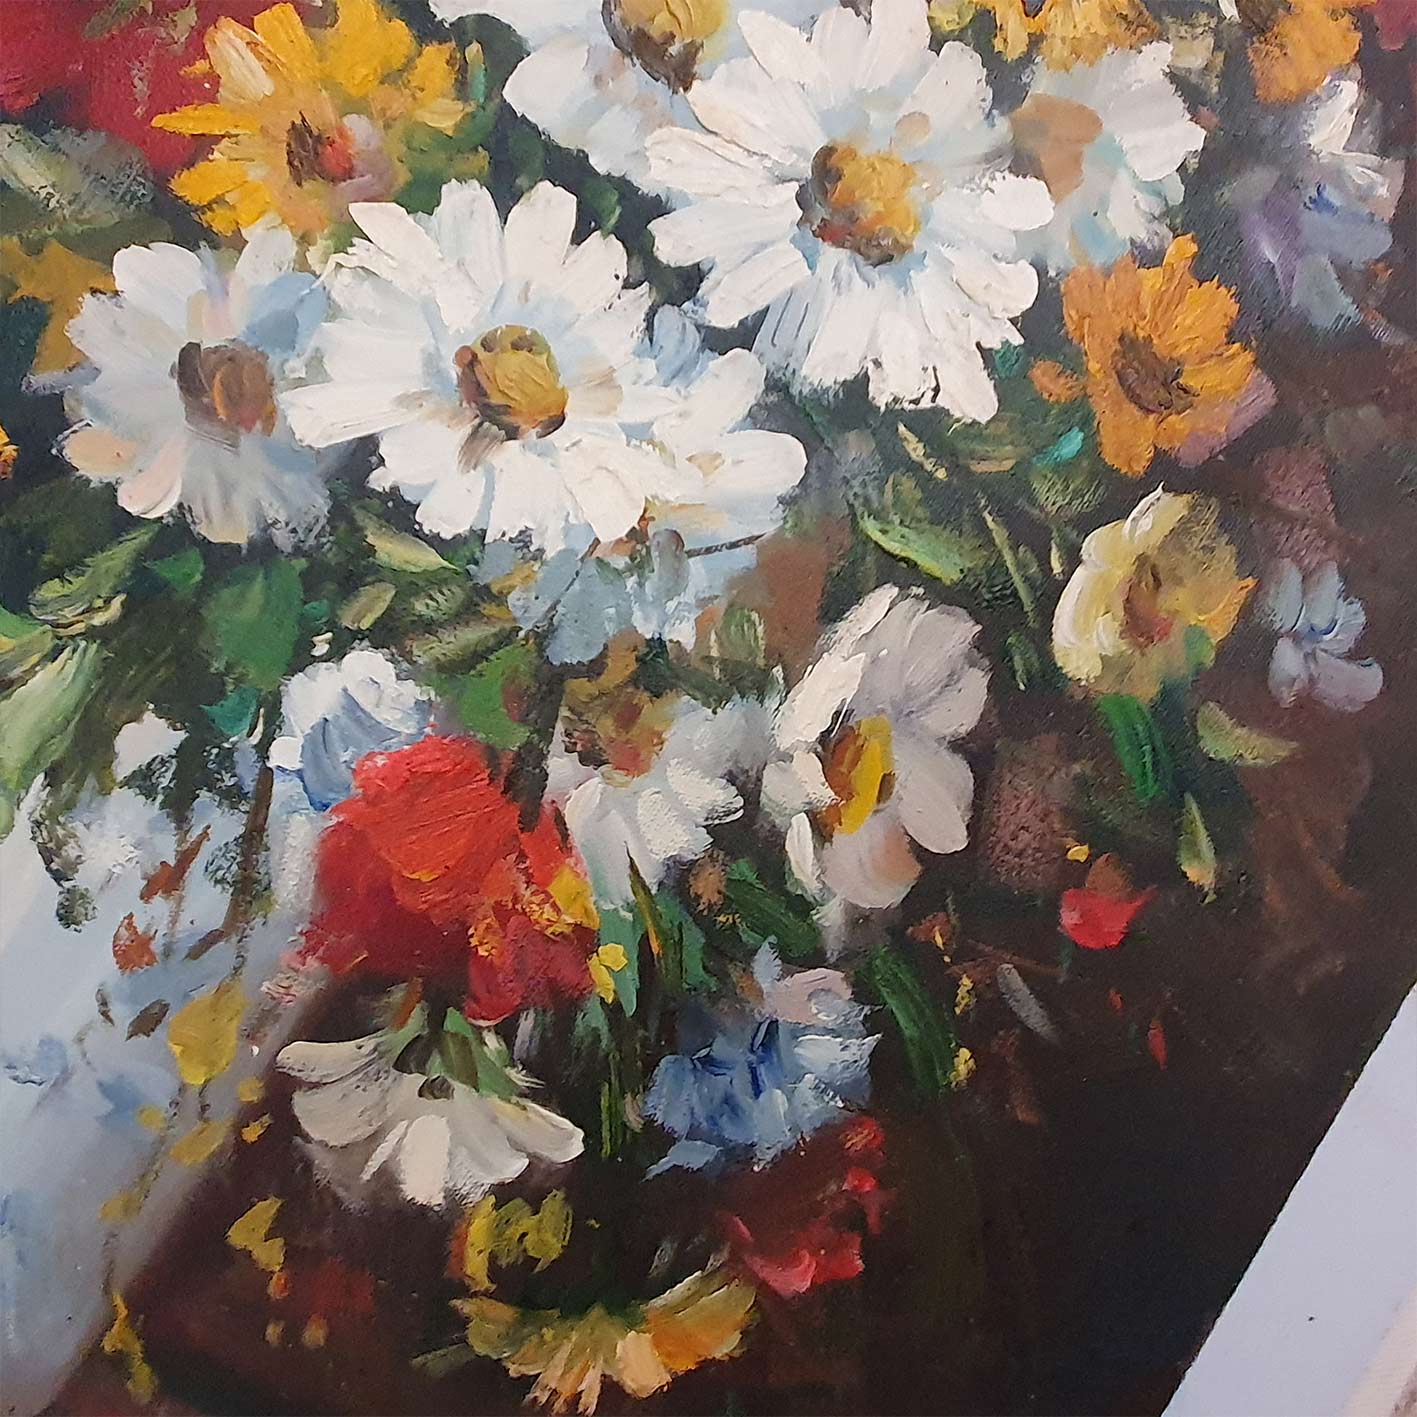 Vintage Flower Vase Painting 50x60 cm [2 pieces]